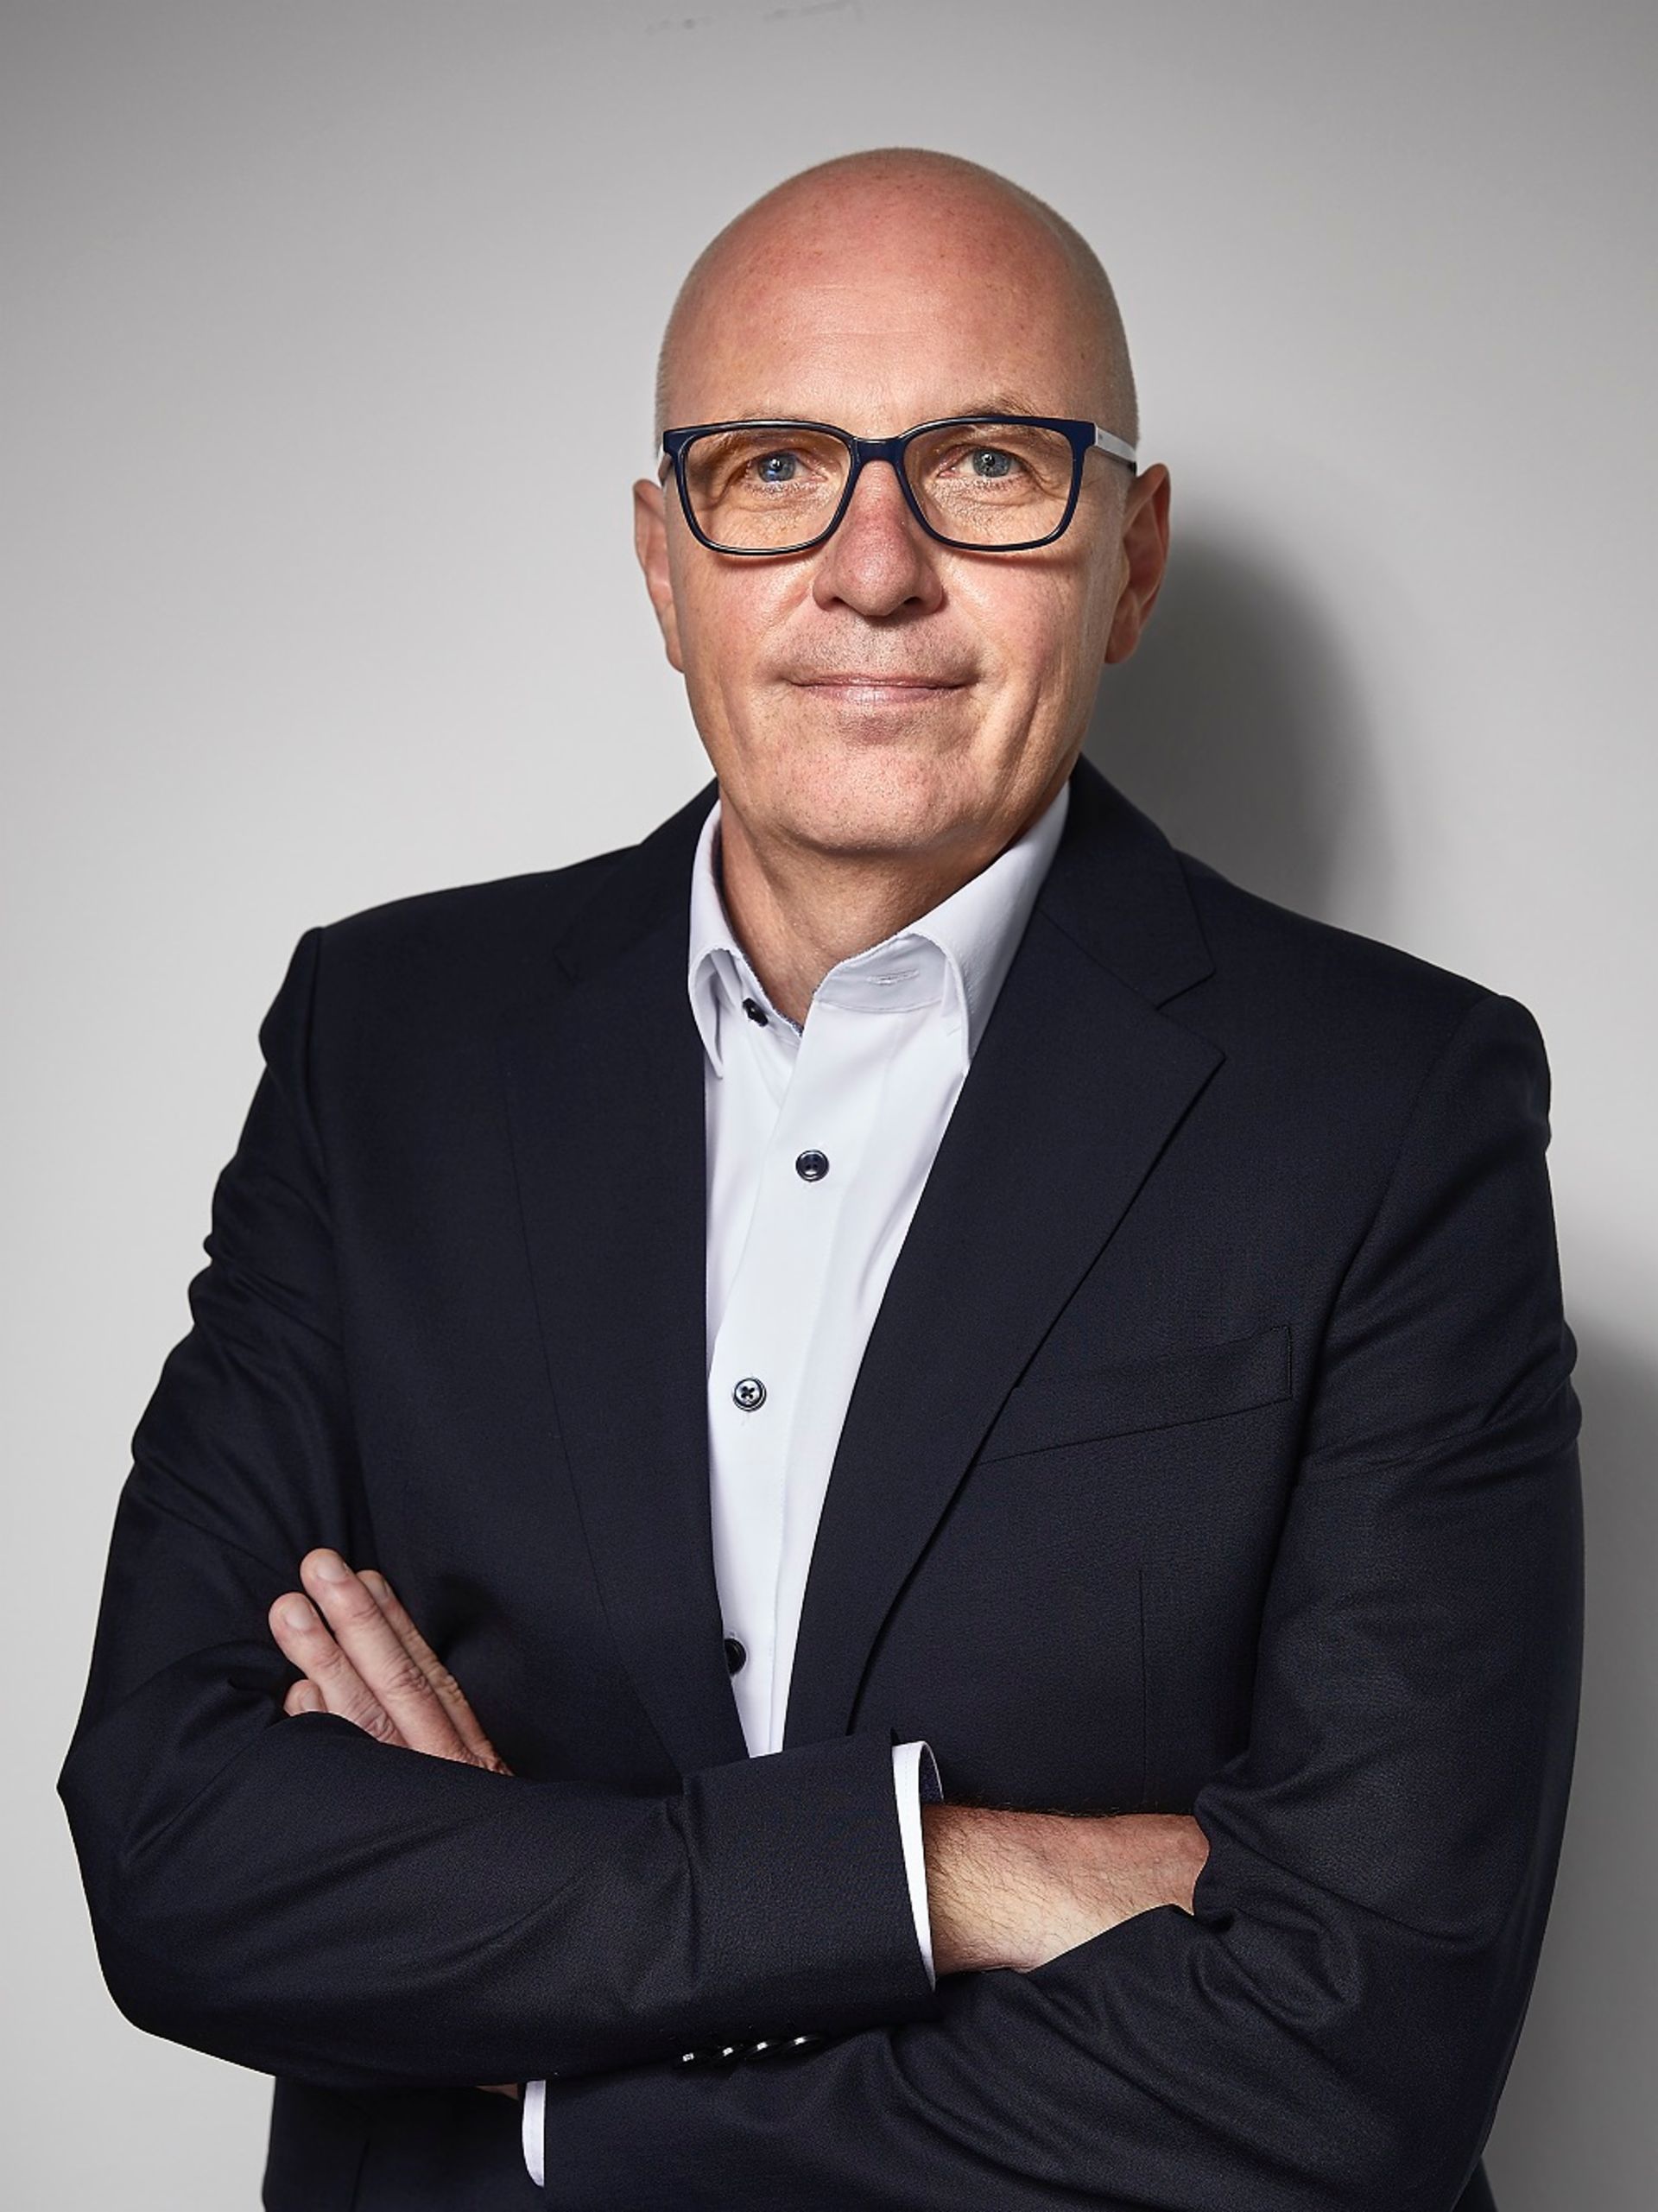 Portrait von Matthias Gründler, dem Vorstandsvorsitzenden TRATON SE